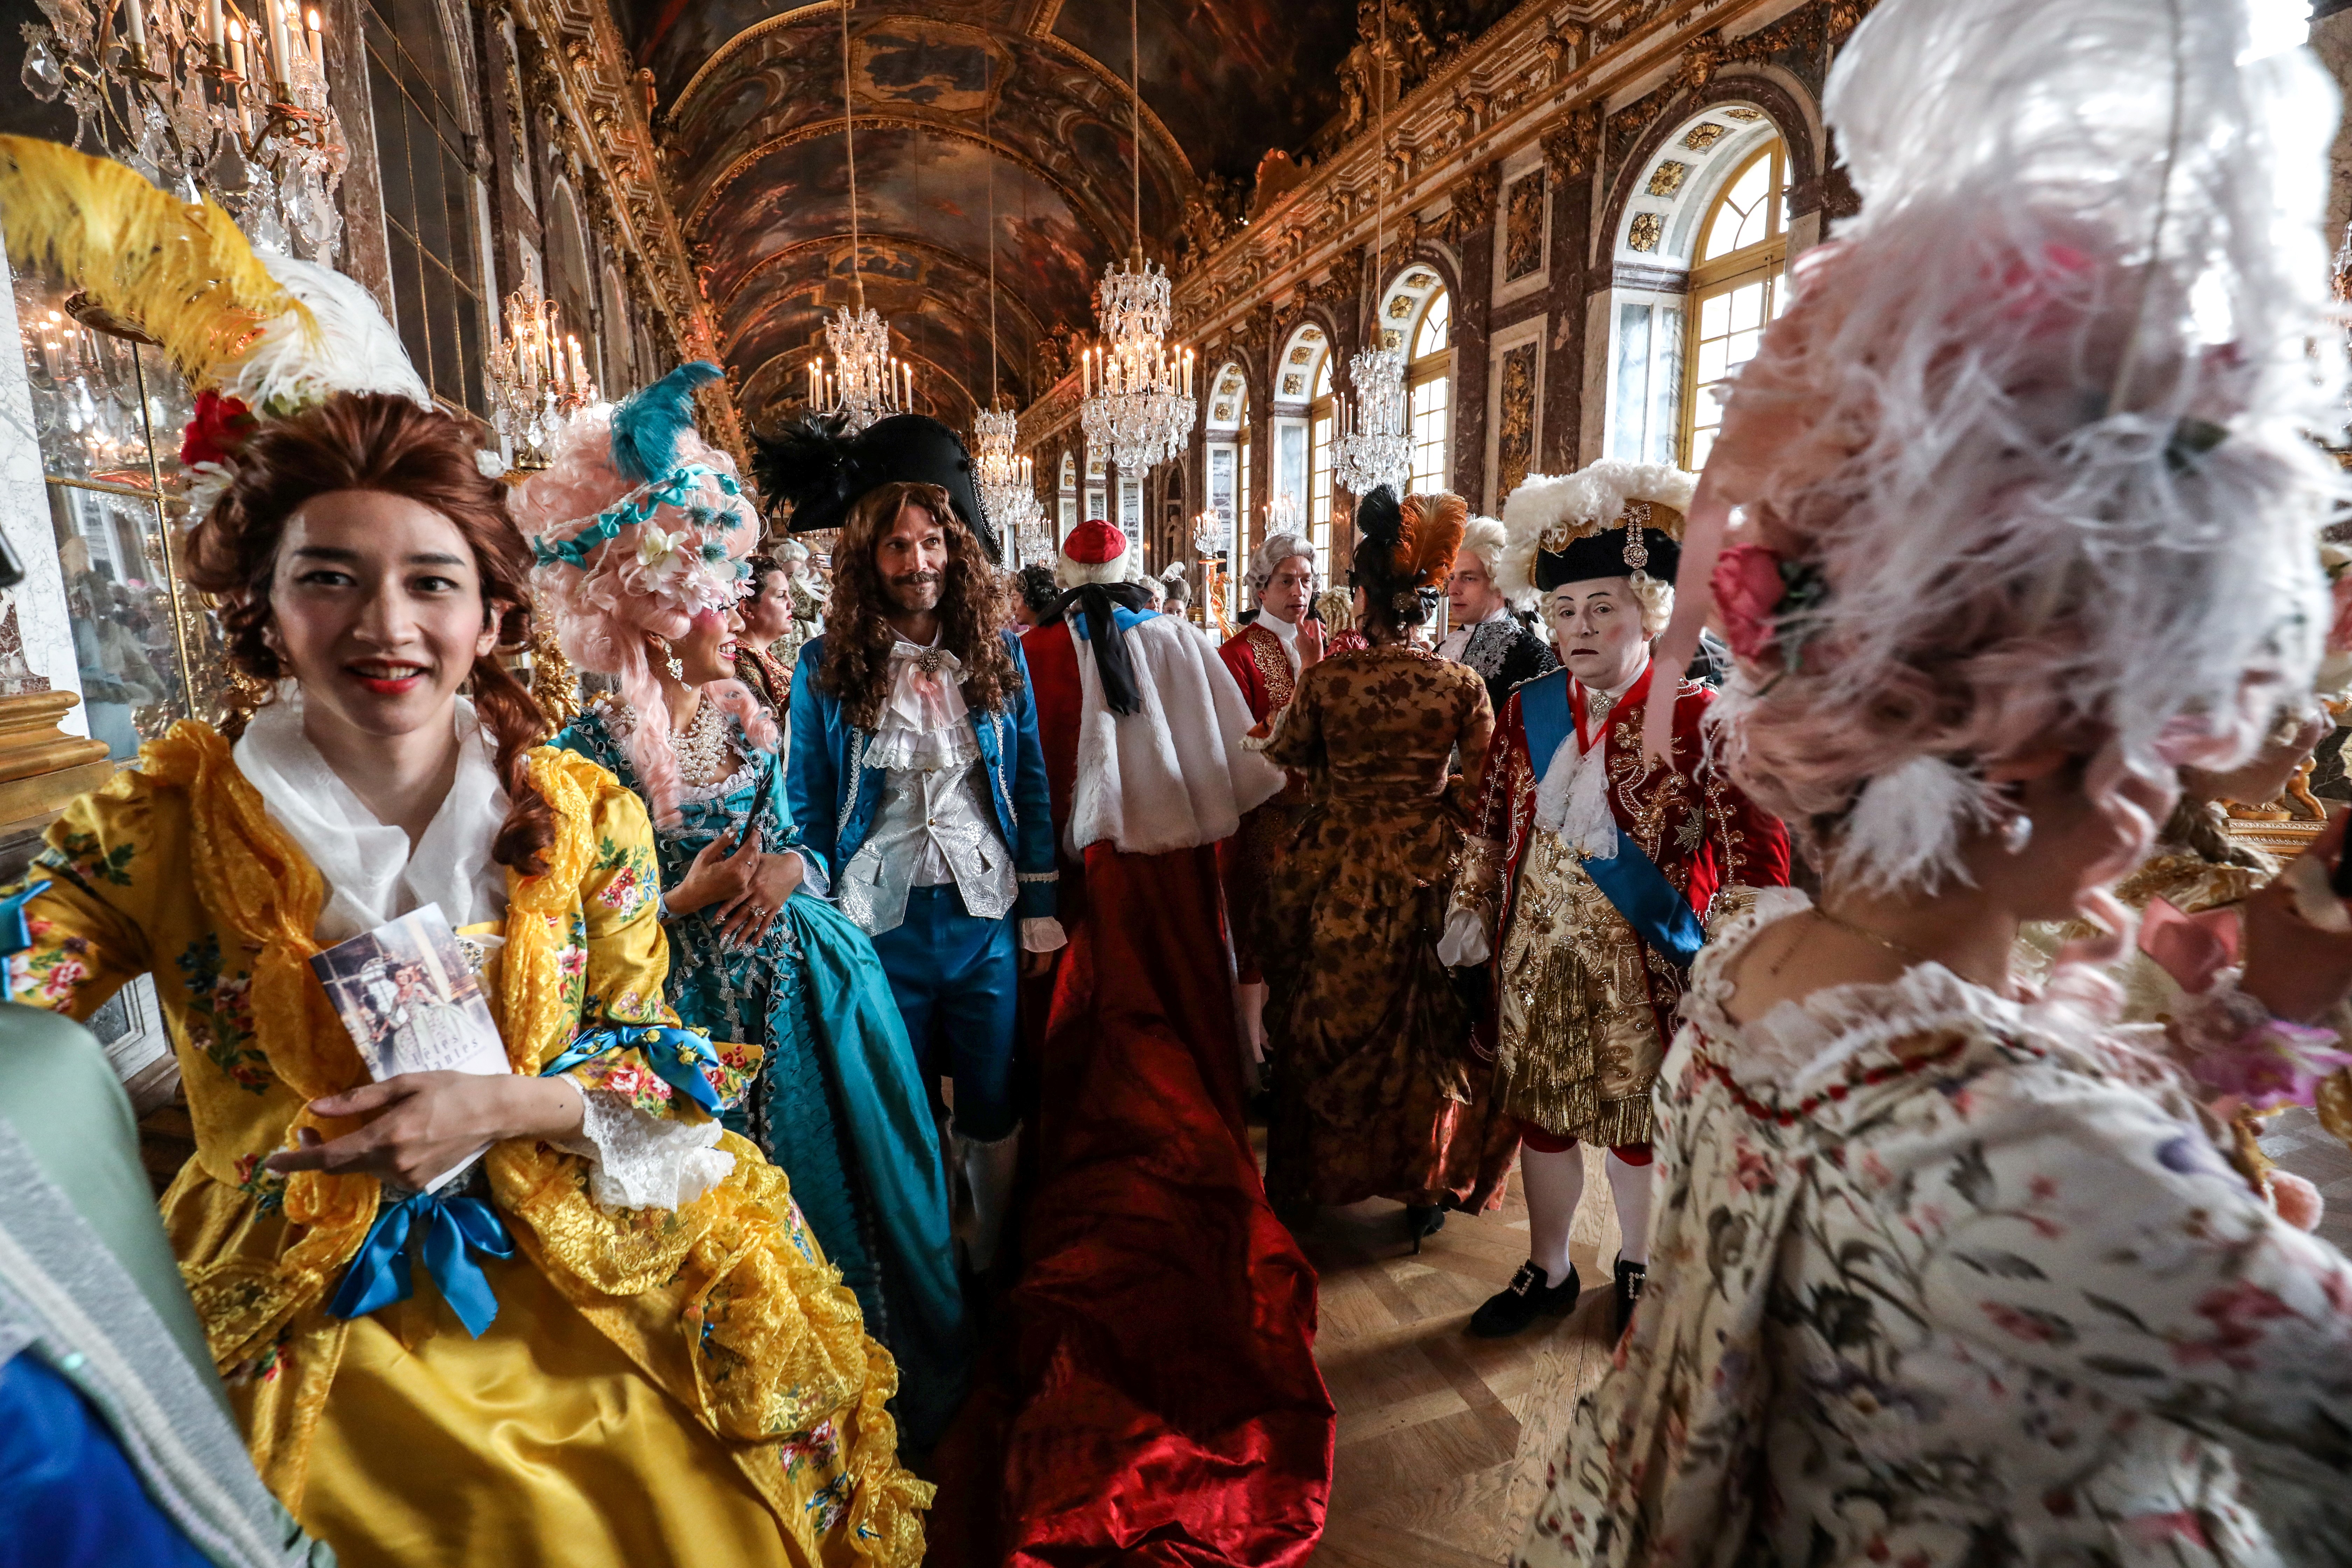 Carnival-costumes: Louis XIV - Fancy dress